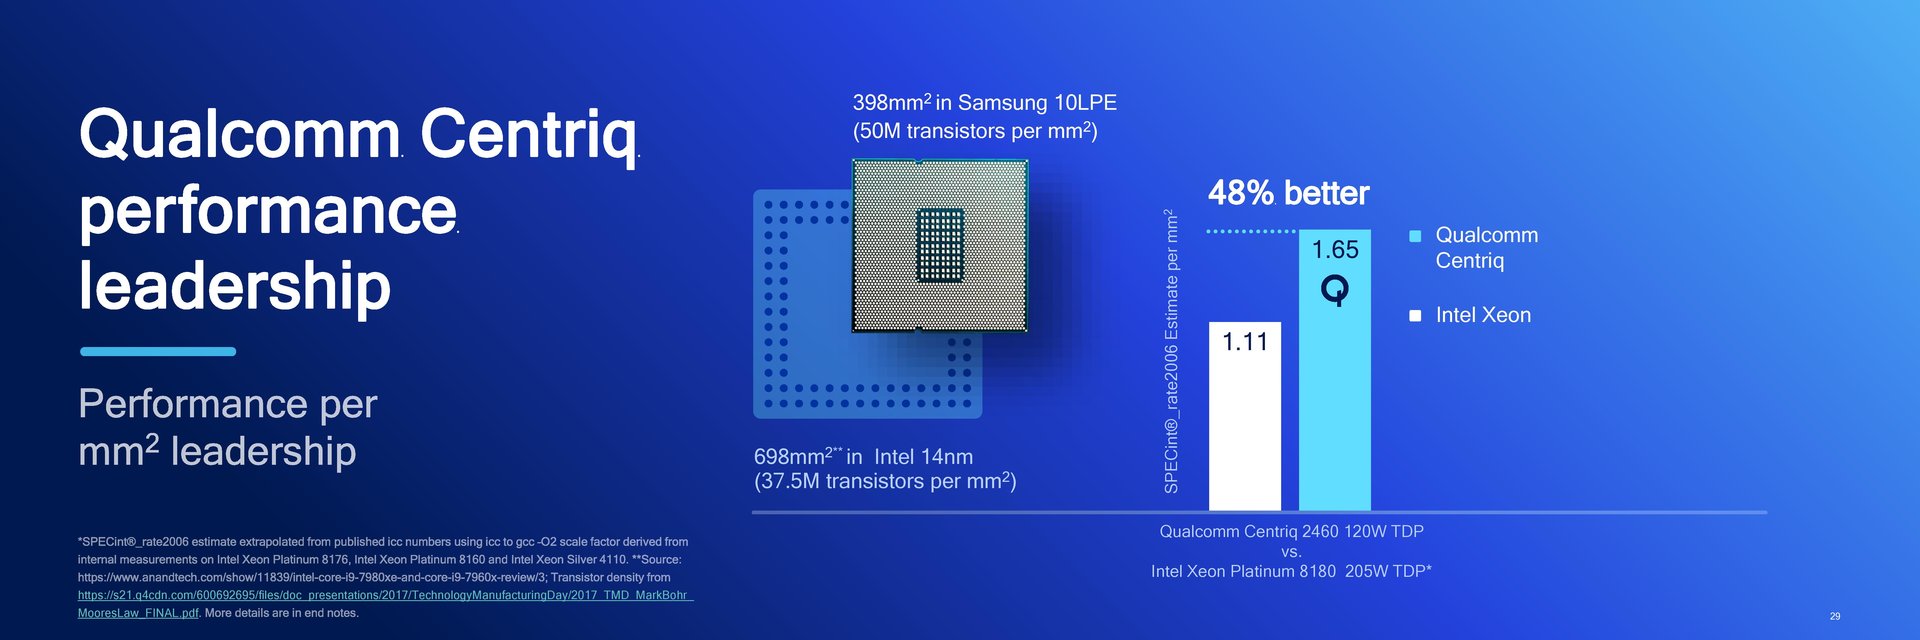 Qualcomm Centriq 2400 im Vergleich zu Intel Xeon